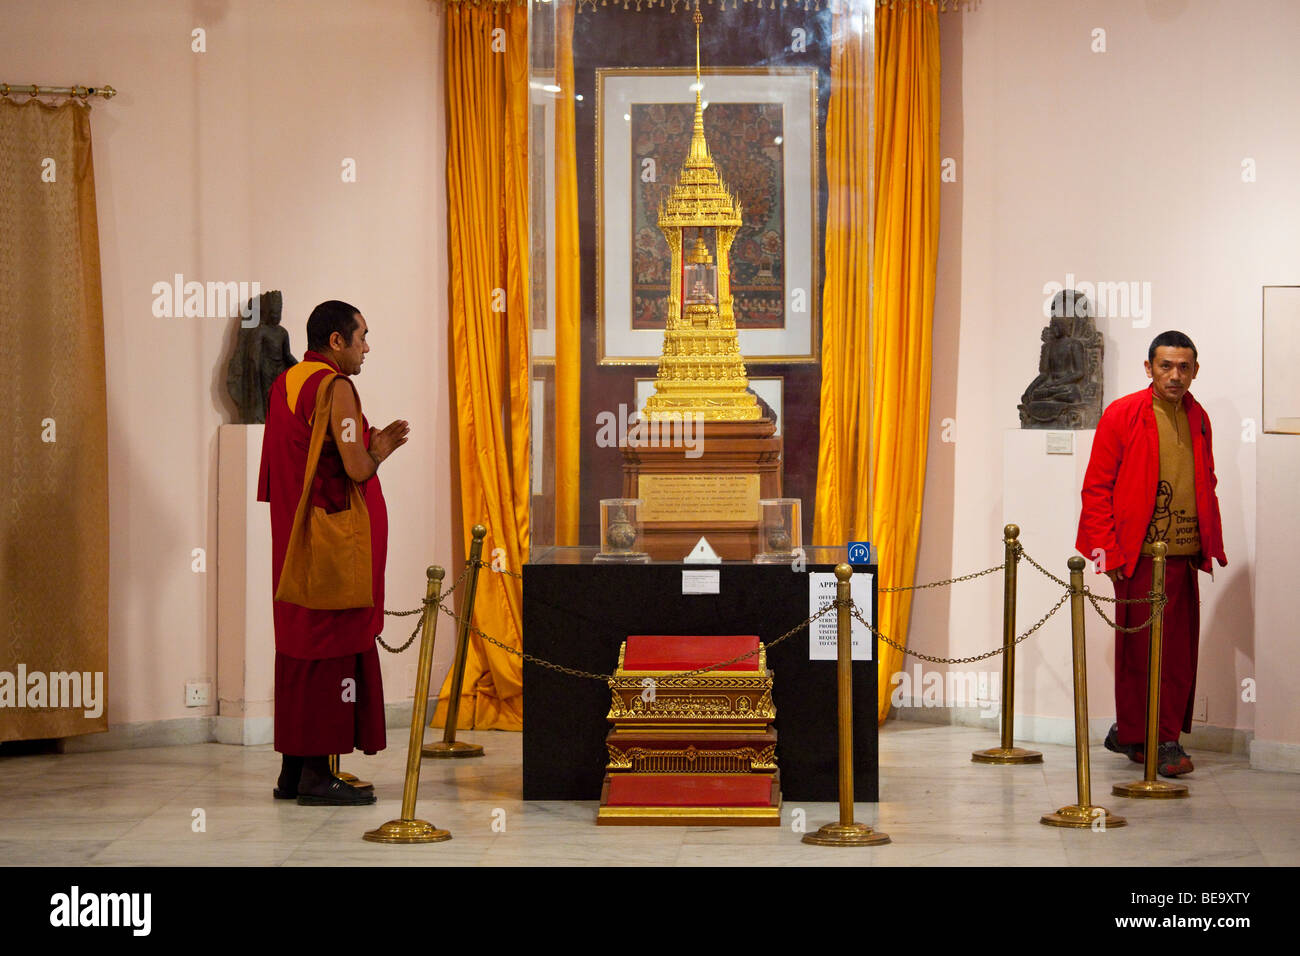 Reliques du Bouddha dans le Musée National de Delhi Inde Banque D'Images